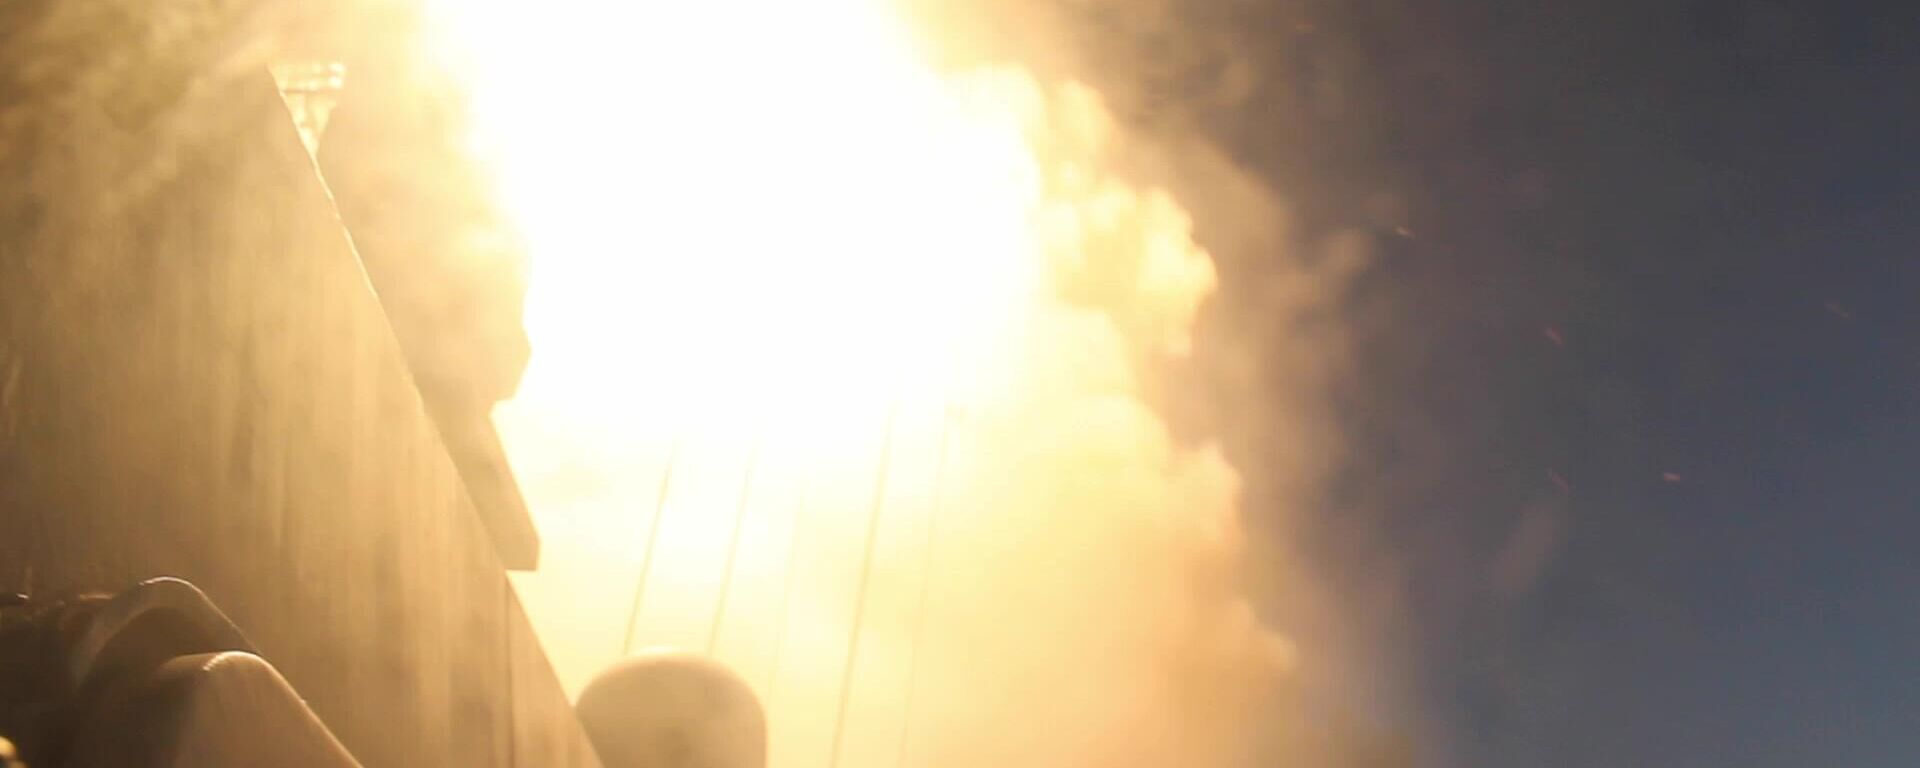 Запуск с корабля ВМФ РФ ракеты Калибр по инфраструктуре украинской армии - Sputnik Латвия, 1920, 25.03.2022